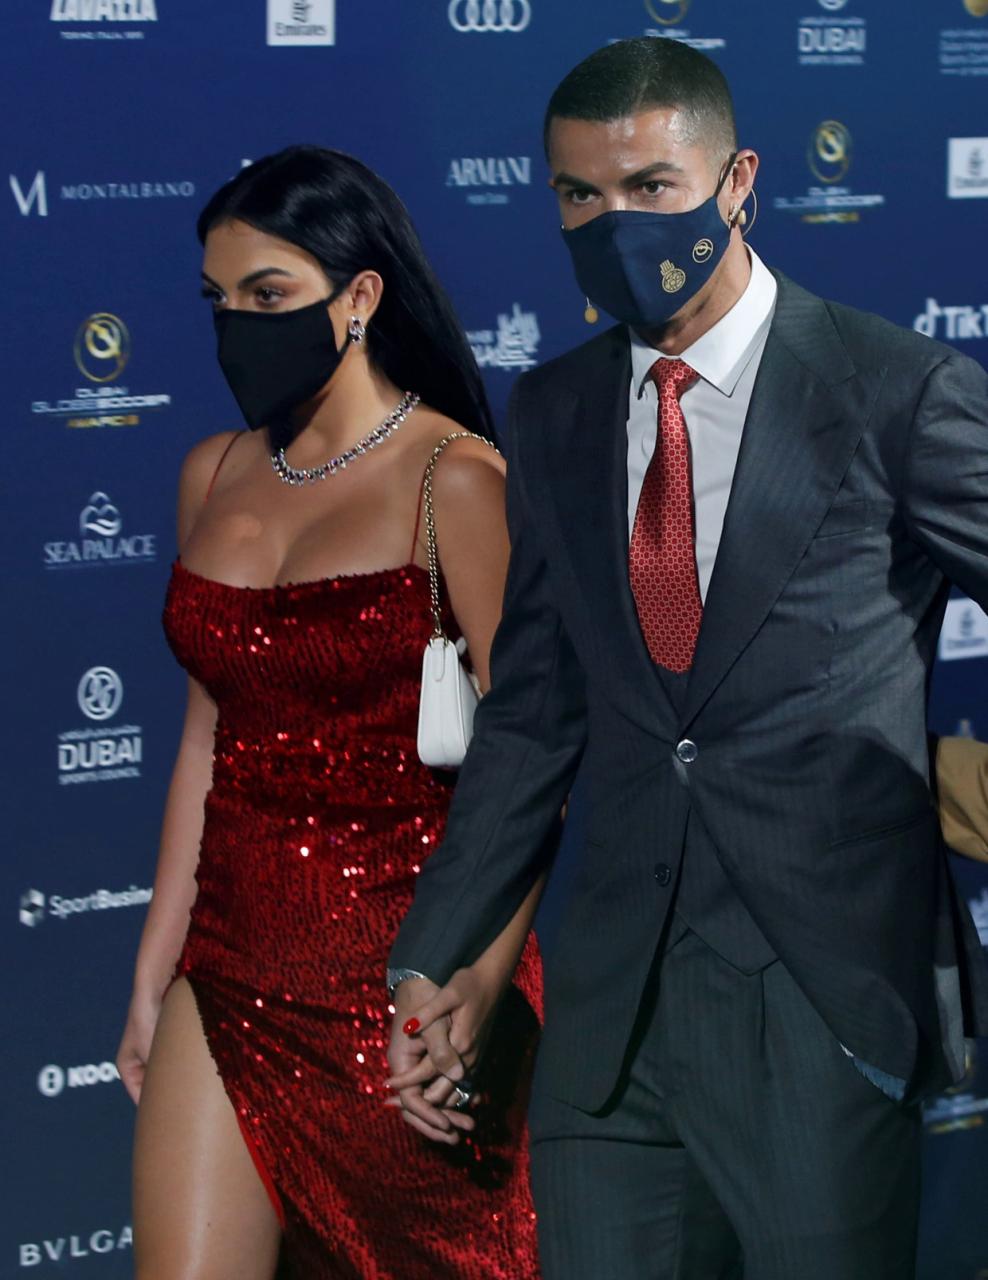 Georgina tháp tùng Ronaldo dự lễ trao giải Globe Soccer Awards ở Dubai tháng 12/2020. Ảnh: EPA